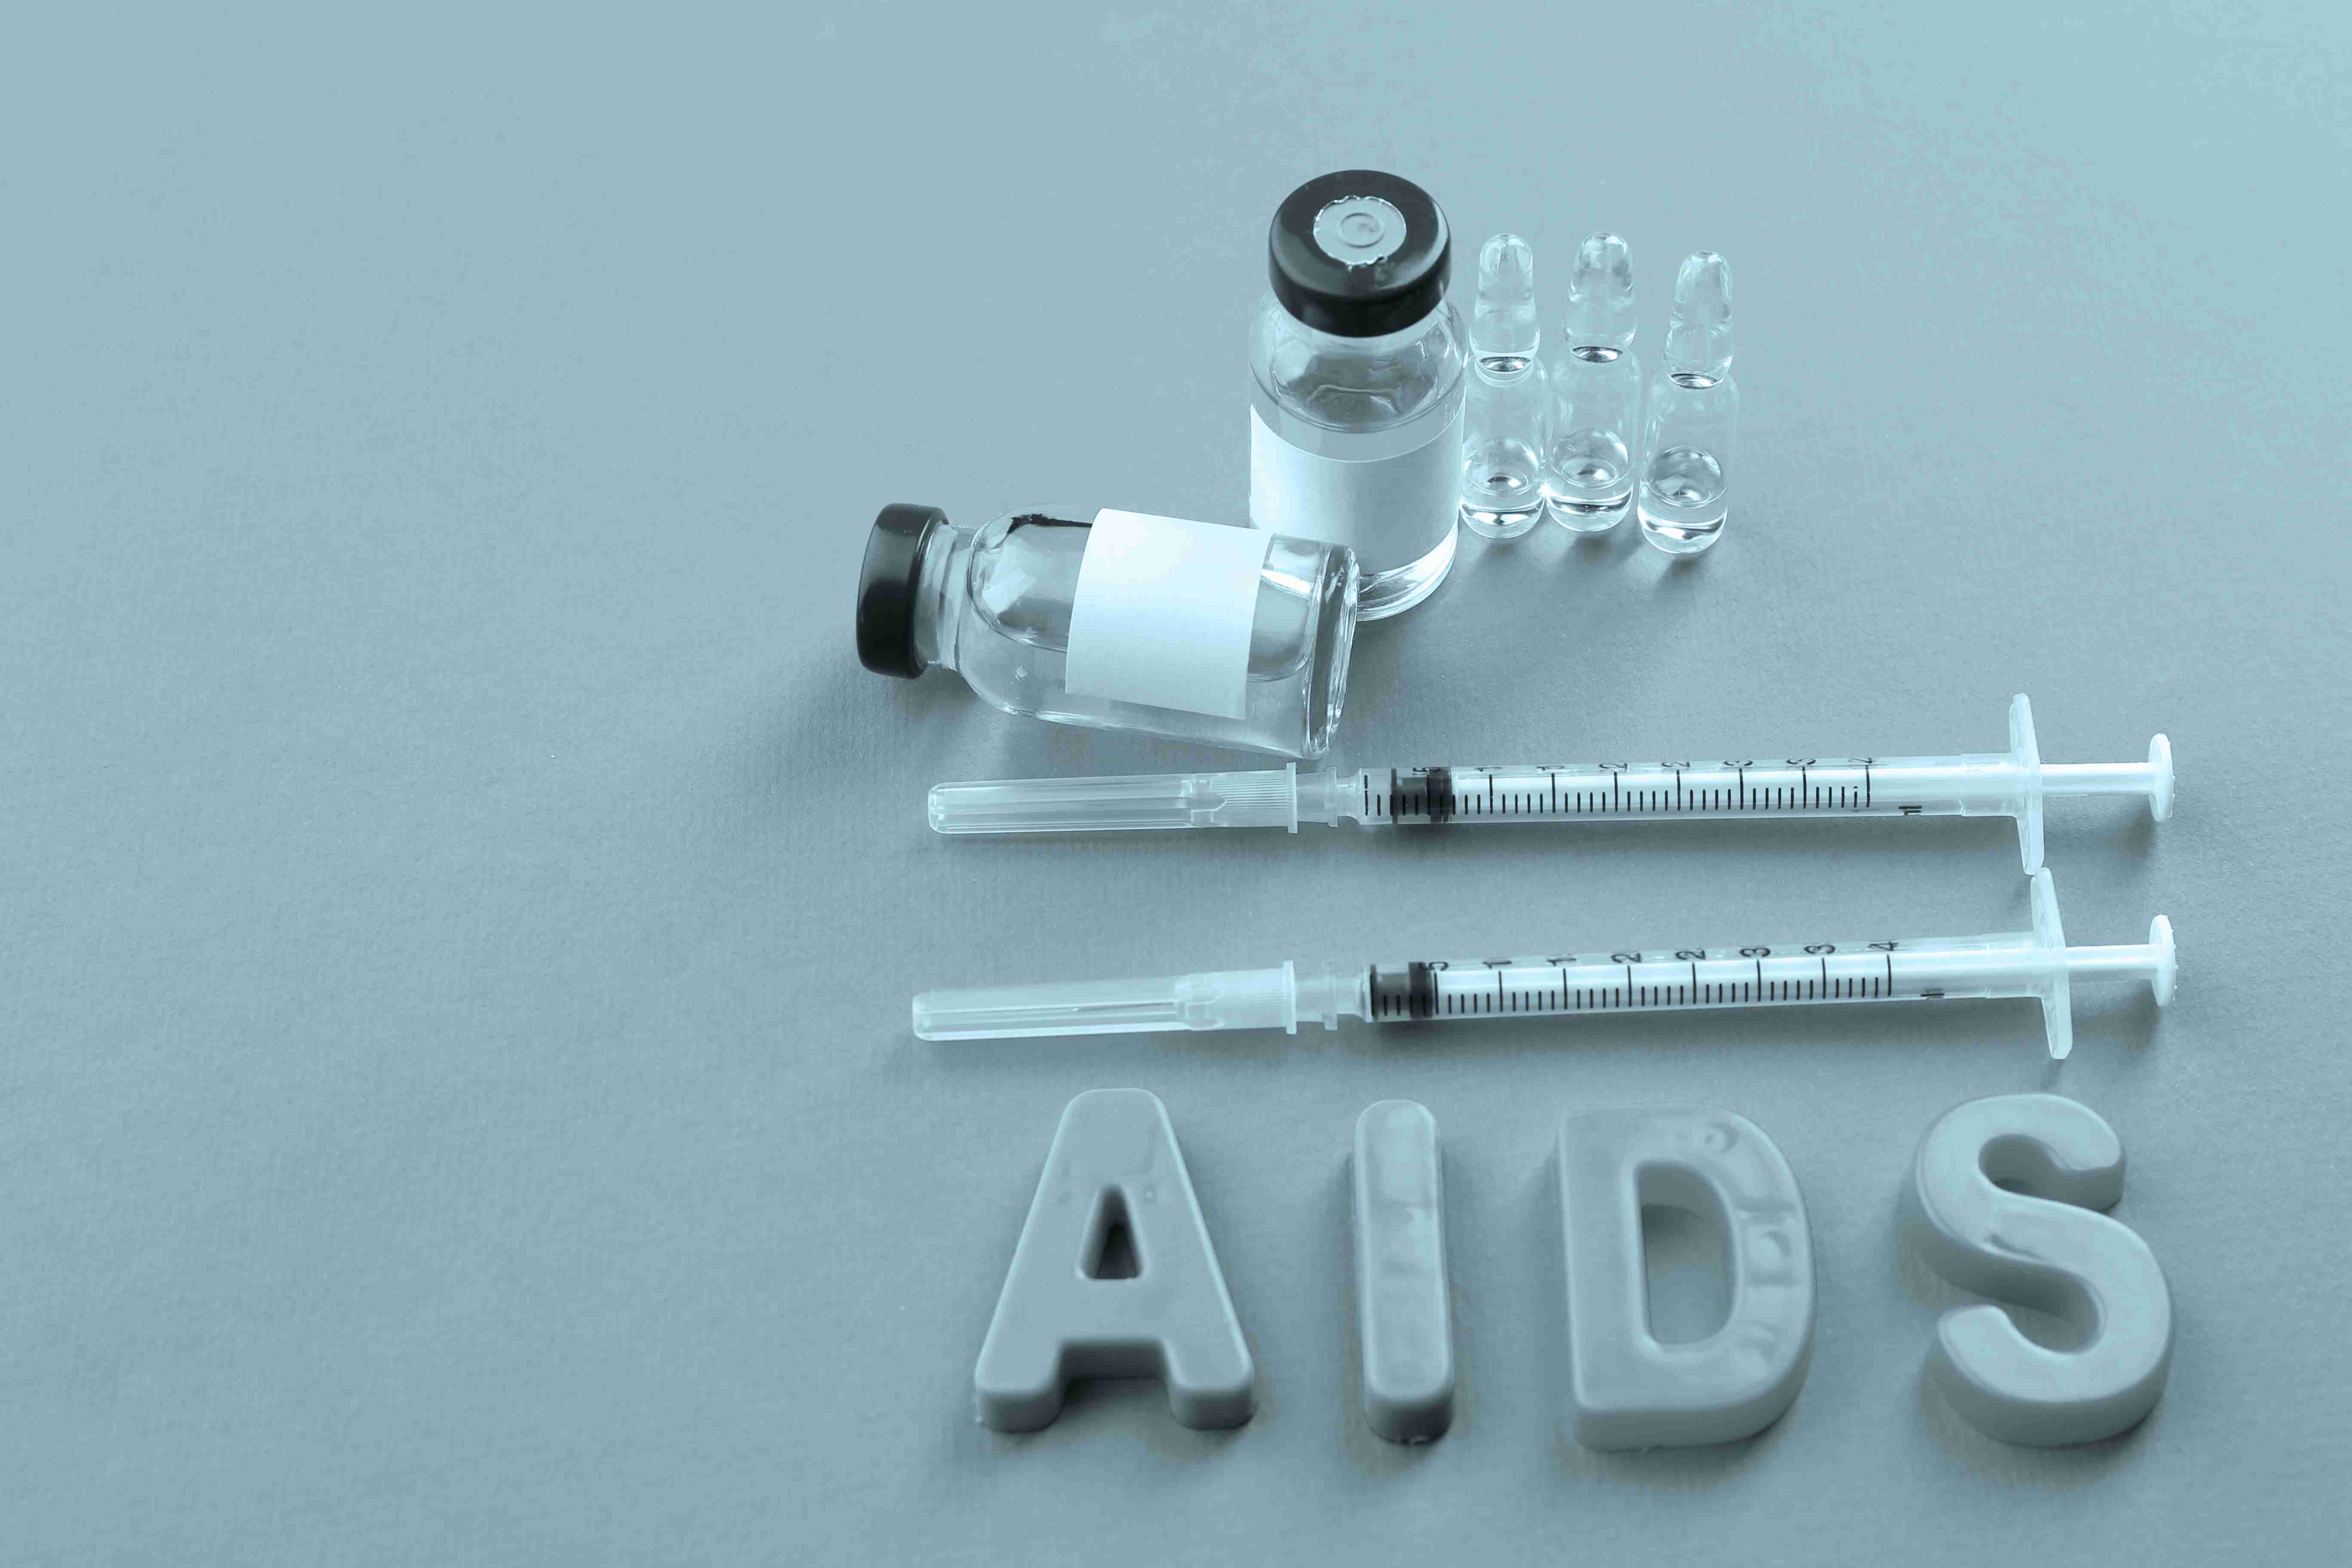 終止艾滋病流行需社會合力